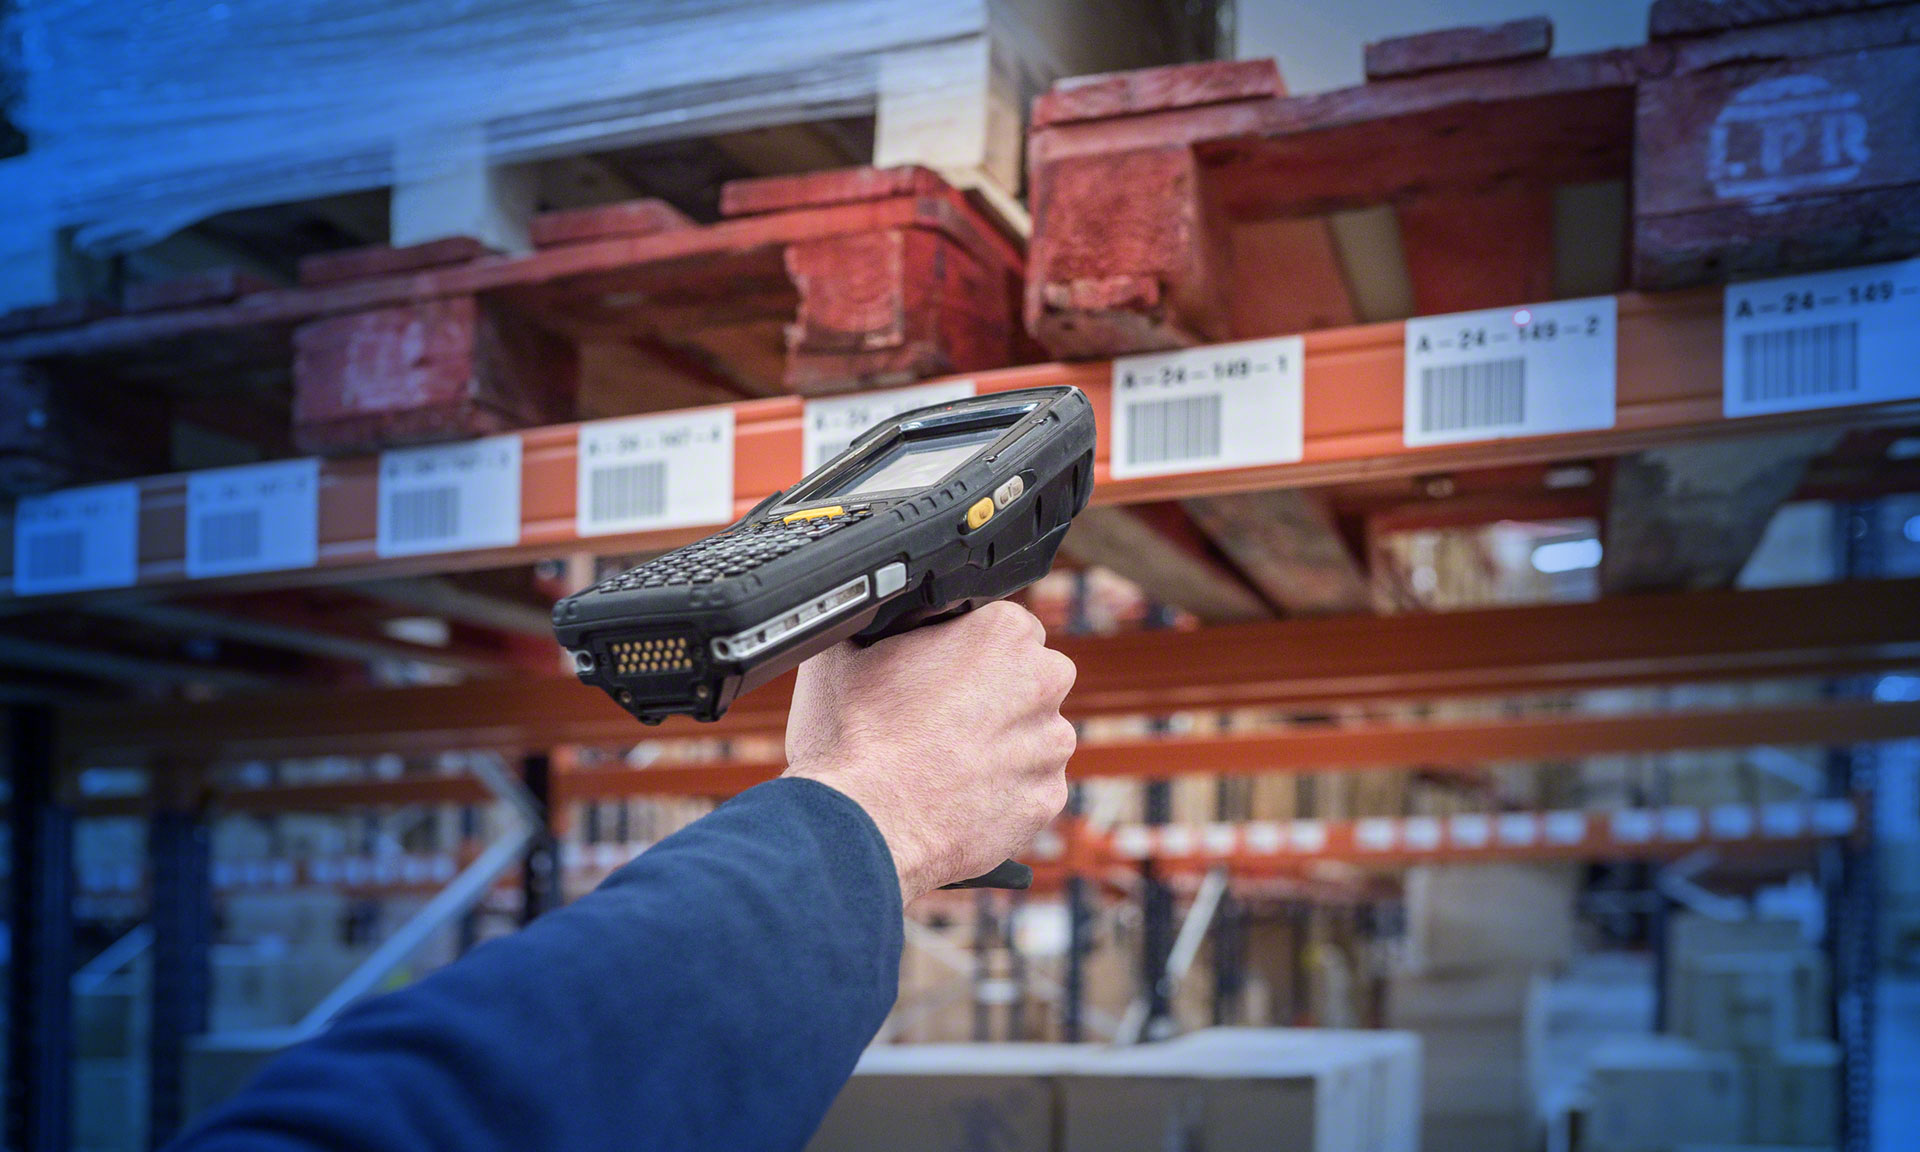 Los operarios utilizan pistolas de radiofrecuencia a la hora de realizar el inventario del almacén